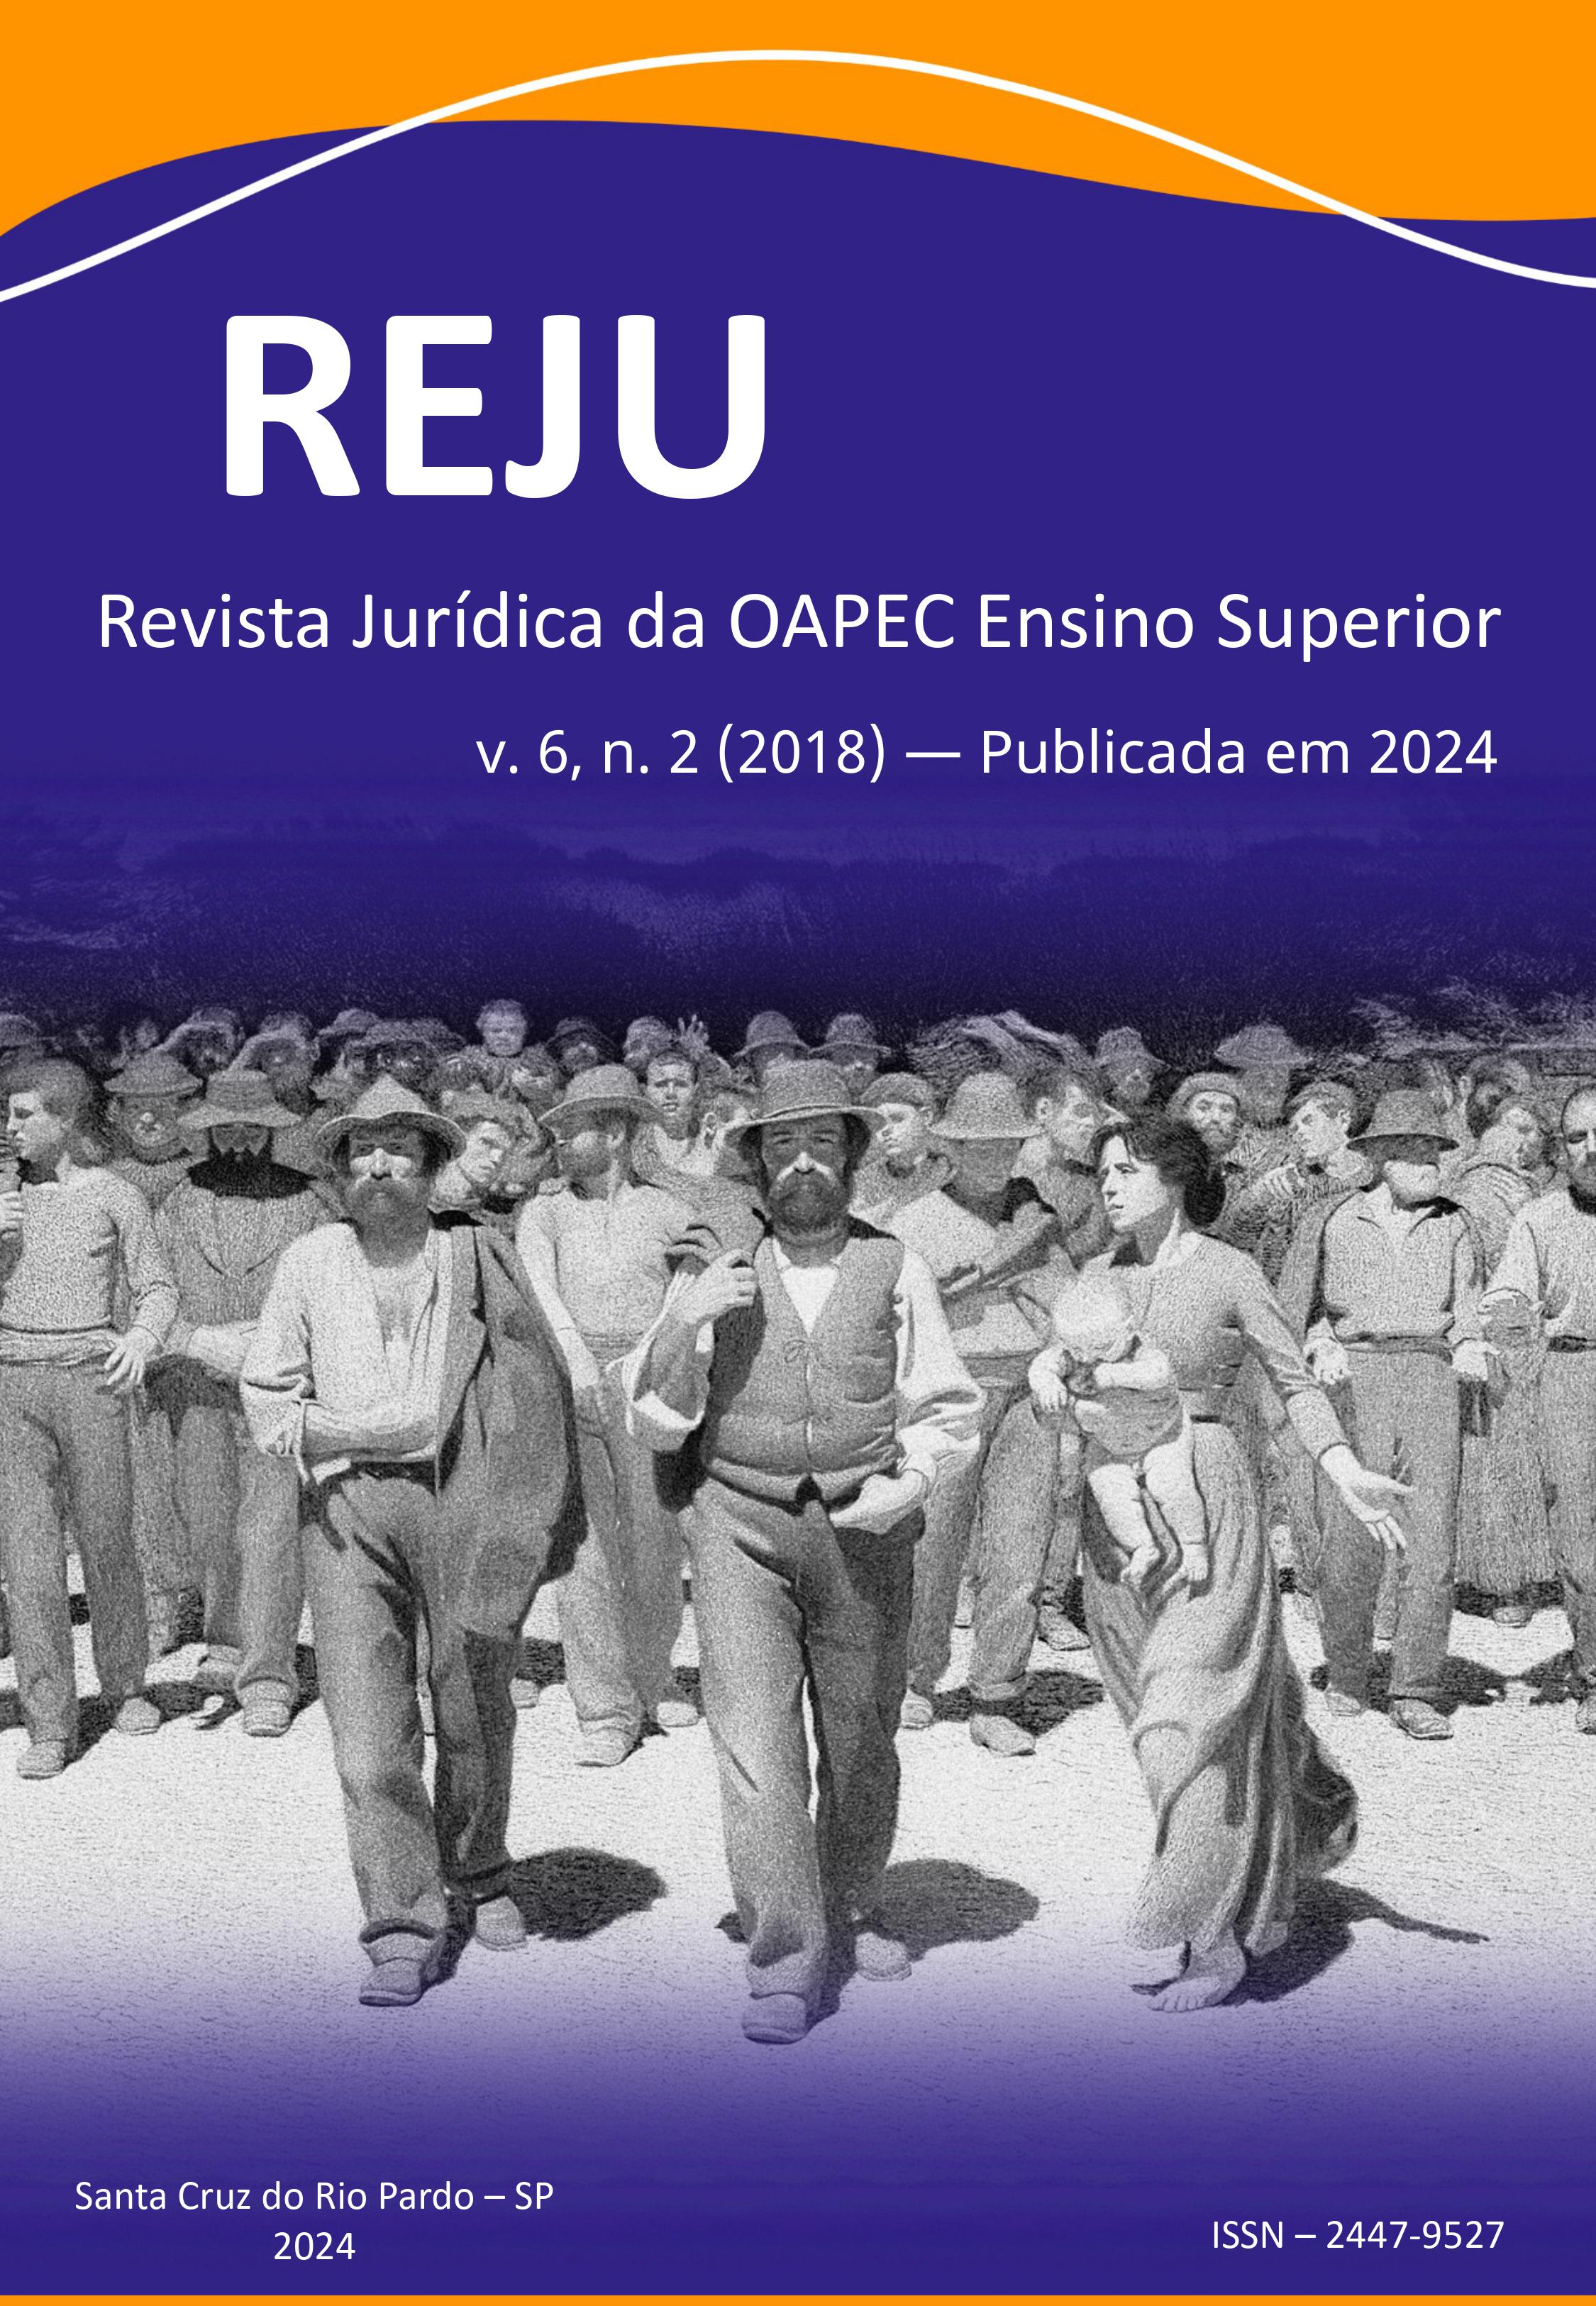 					Visualizar v. 6 n. 2 (2018): REJU - Revista Jurídica da OAPEC Ensino Superior
				